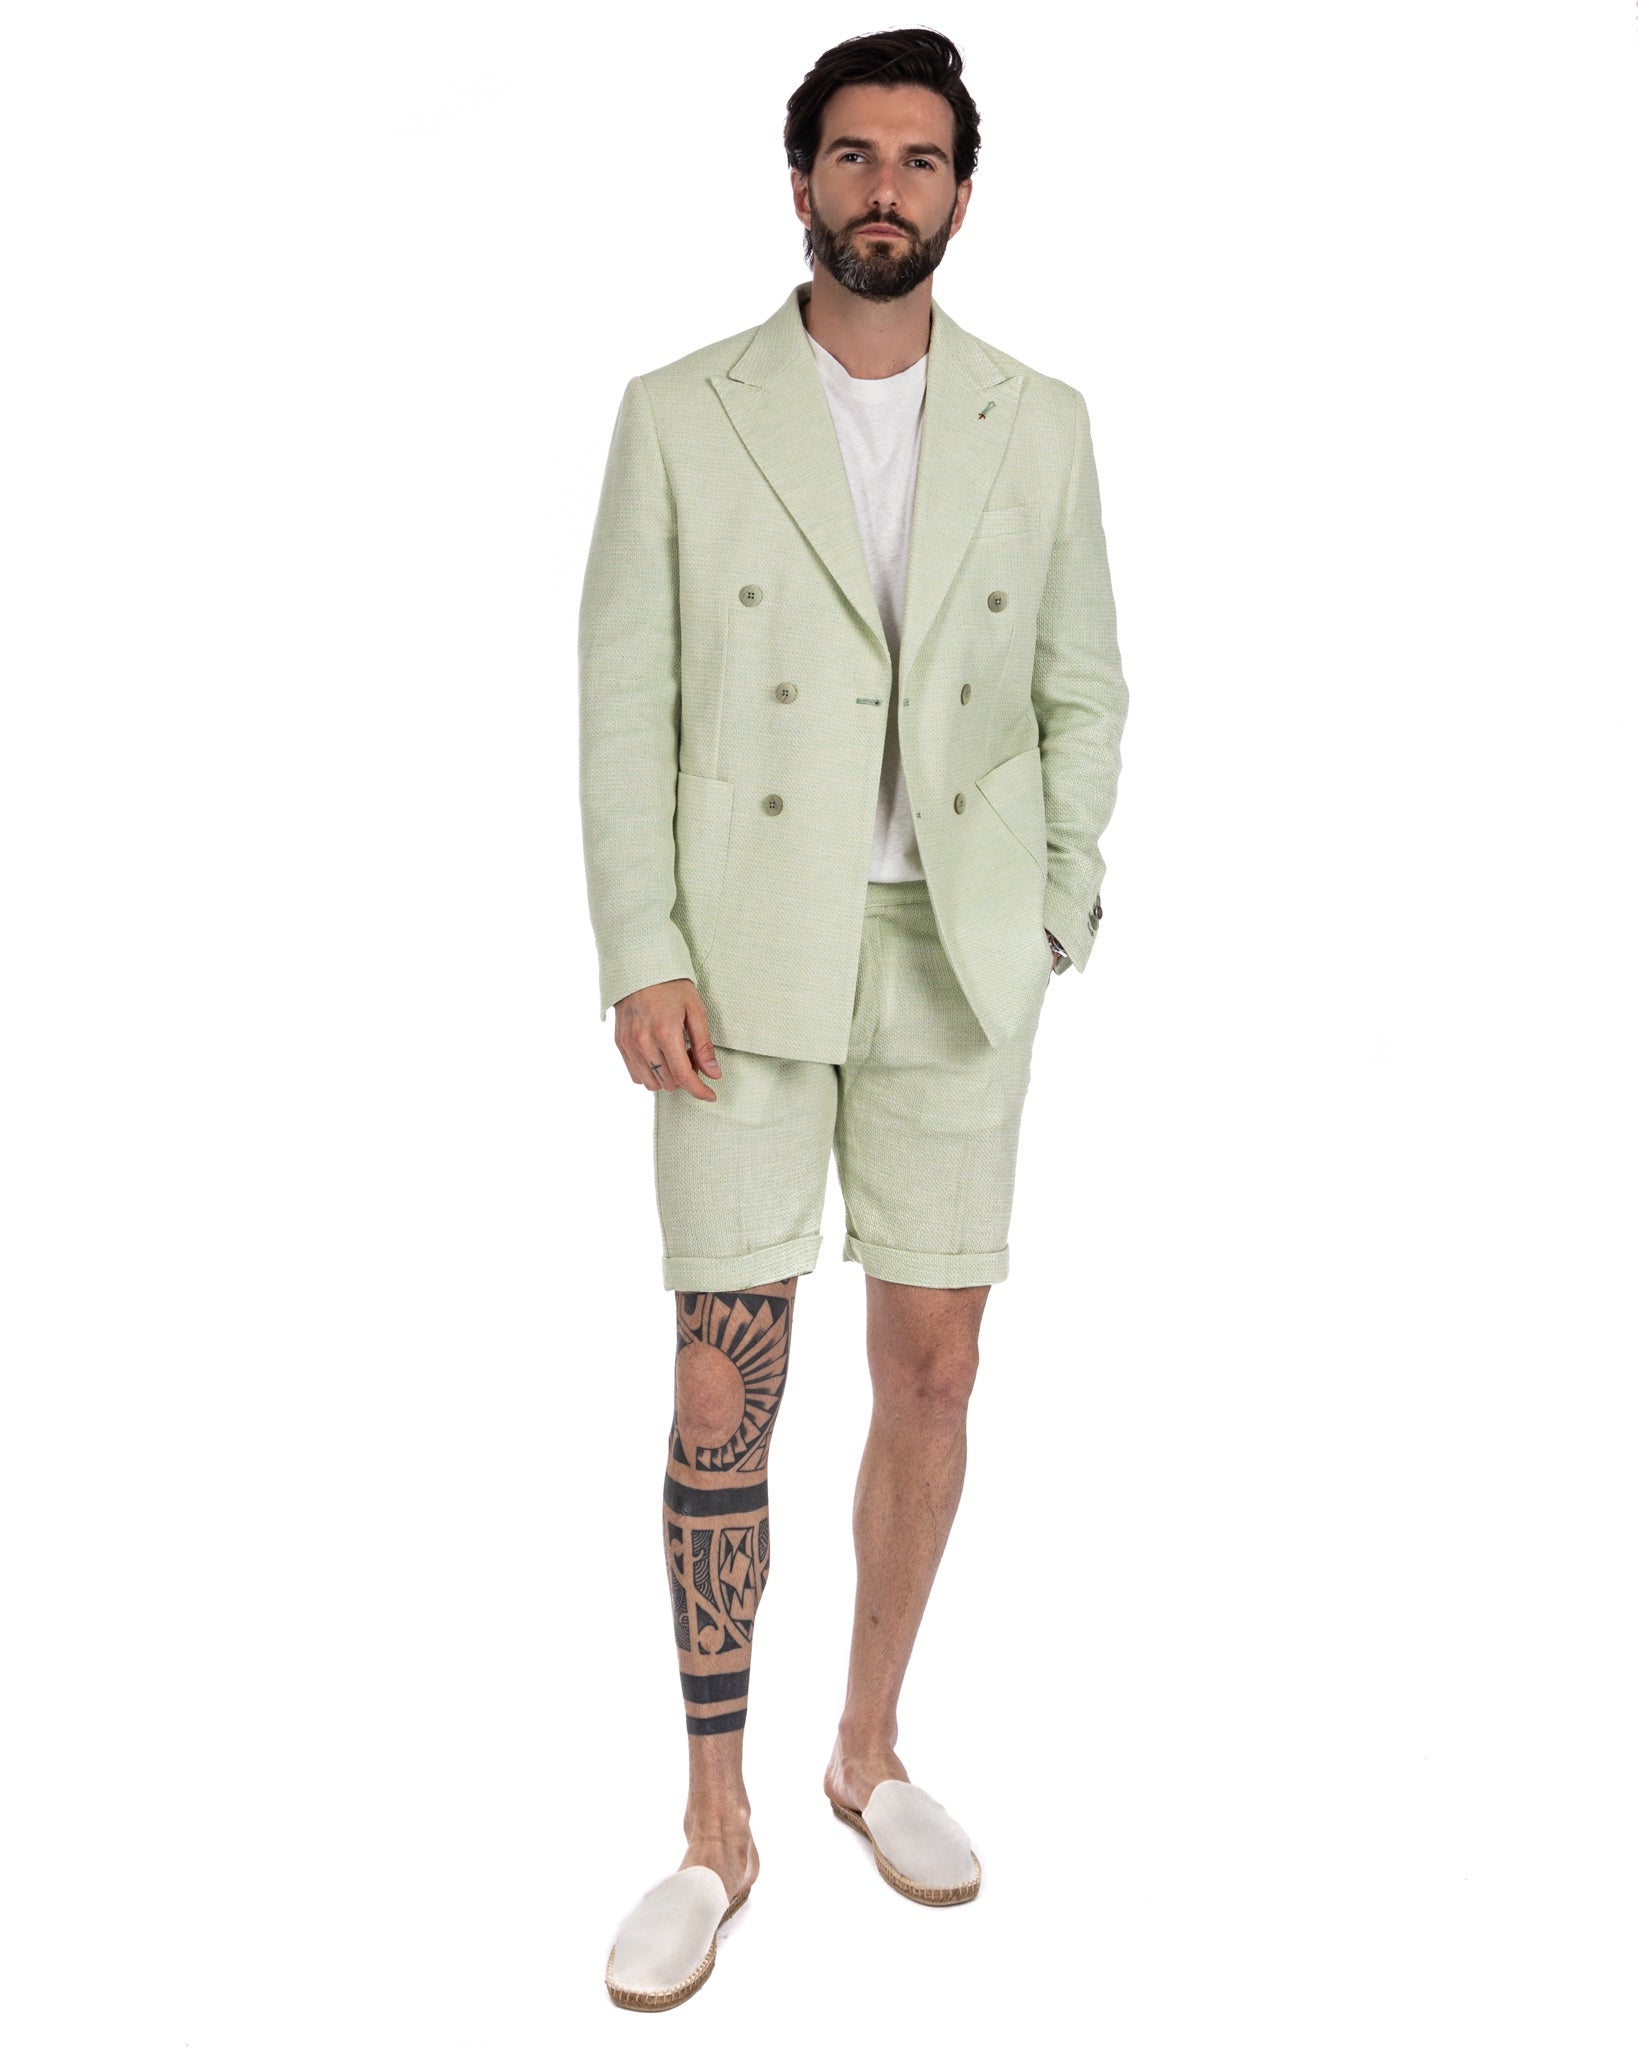 Leuca - giacca doppiopetto verde